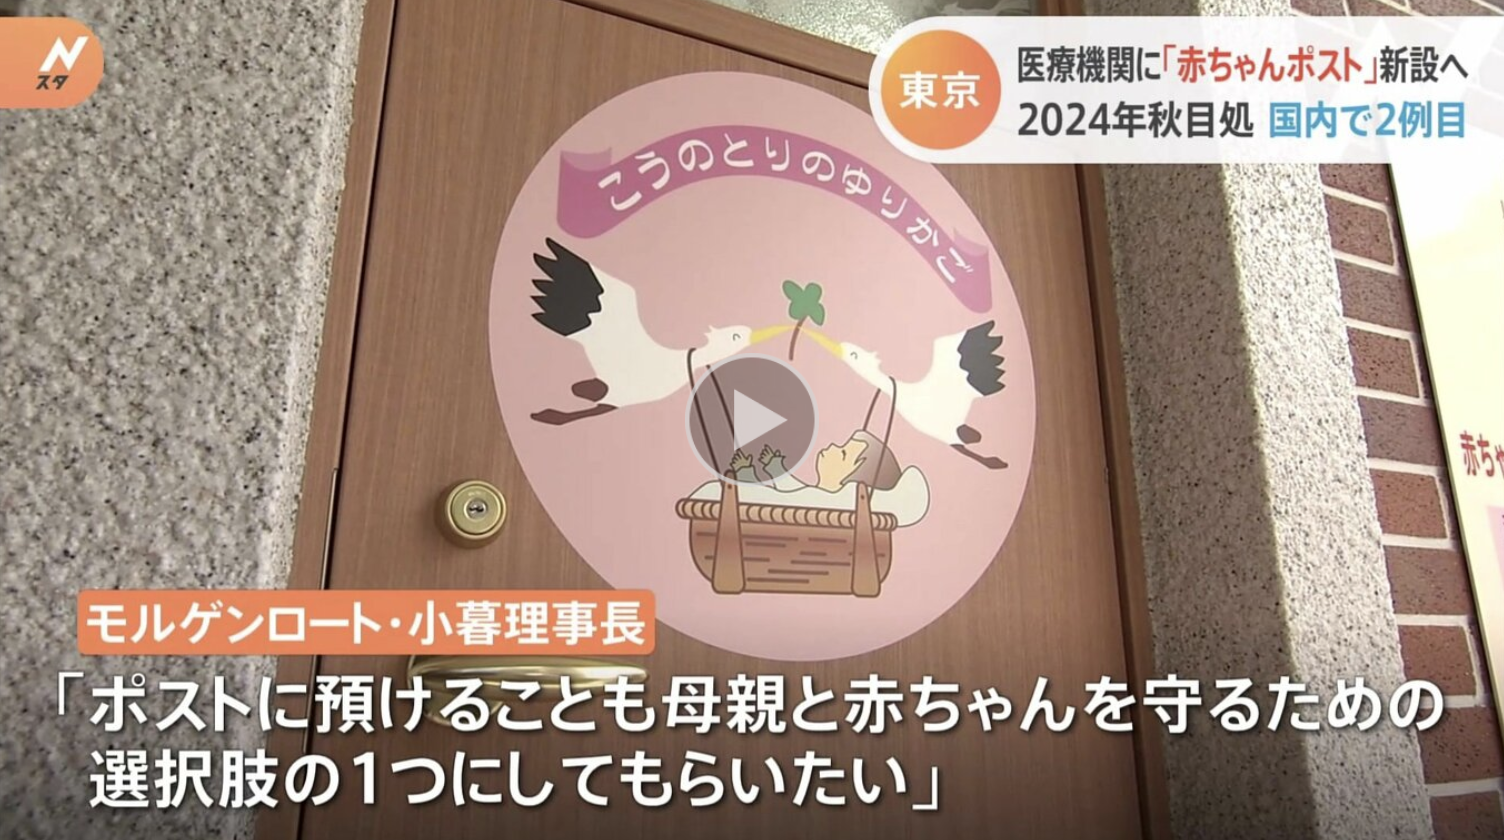 🇫🇷 Une boîte à bébés en préparation à Tokyo pour 2024